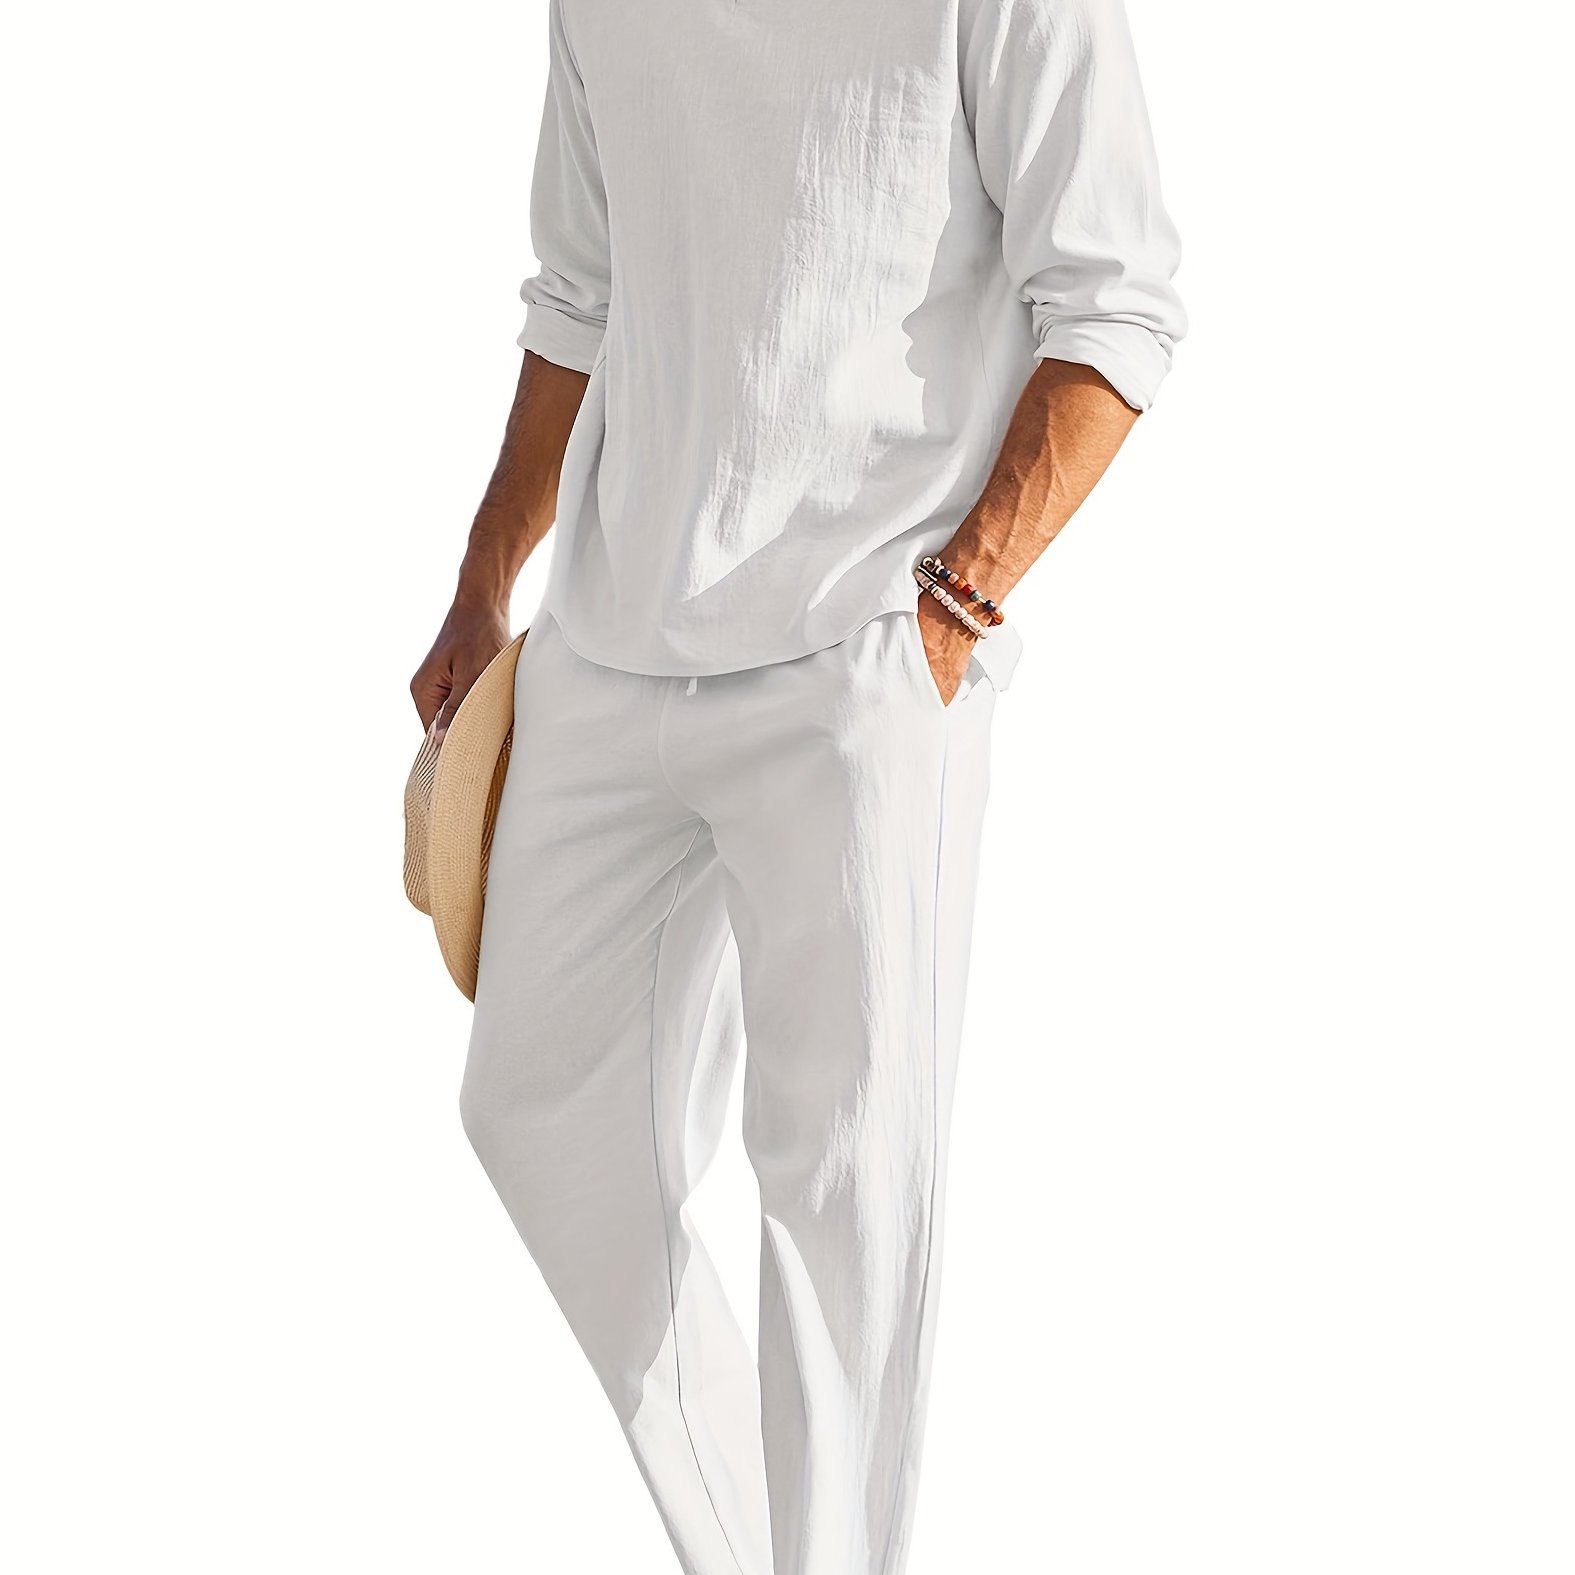 Cotton Linen Blend Retro Elegant Men's Outfits Casual V Neck